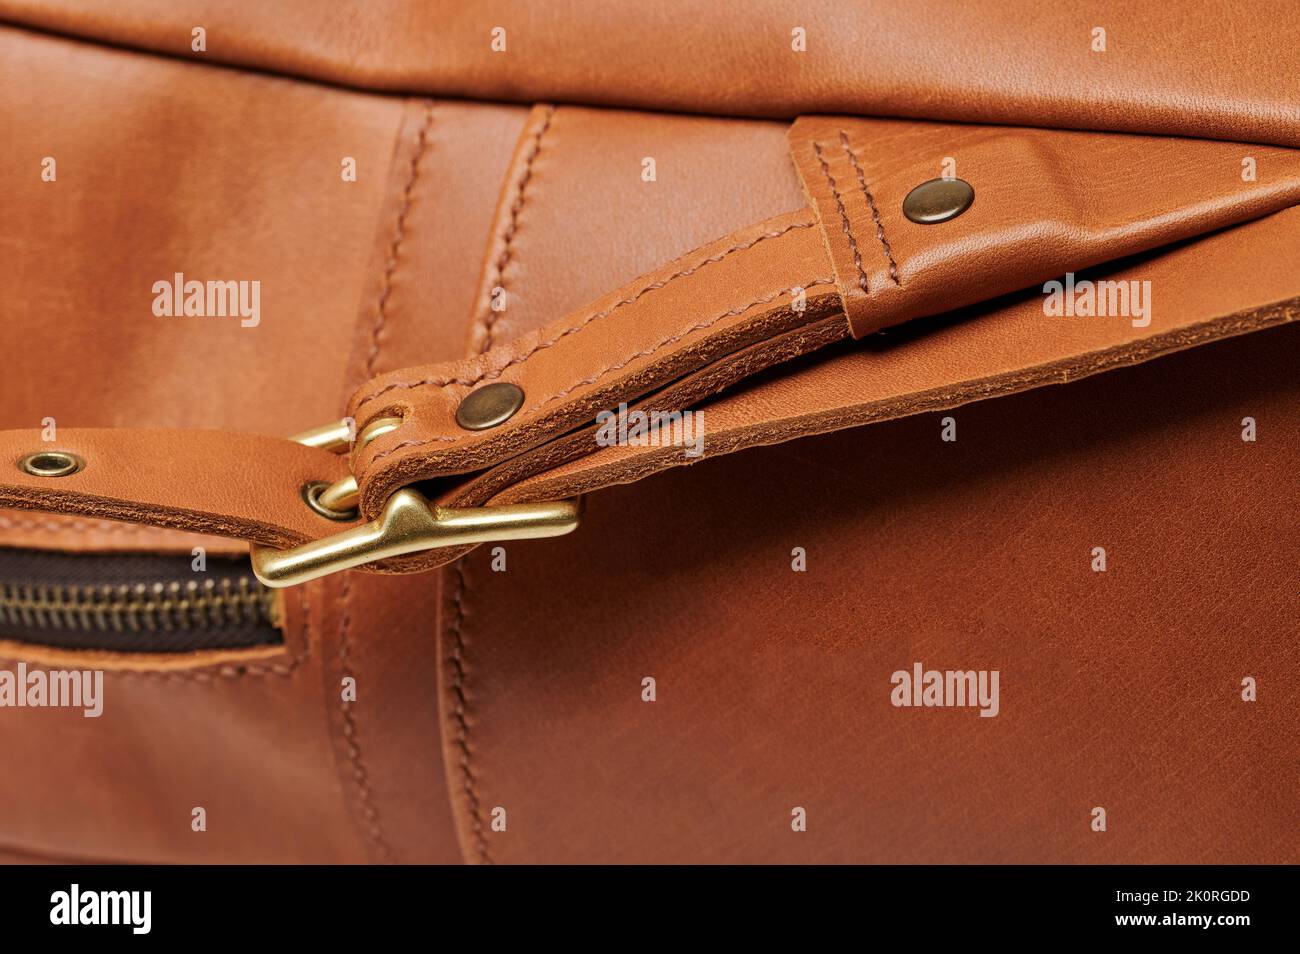 Detalle macro de piel con hebilla metálica en el bolso Foto de stock